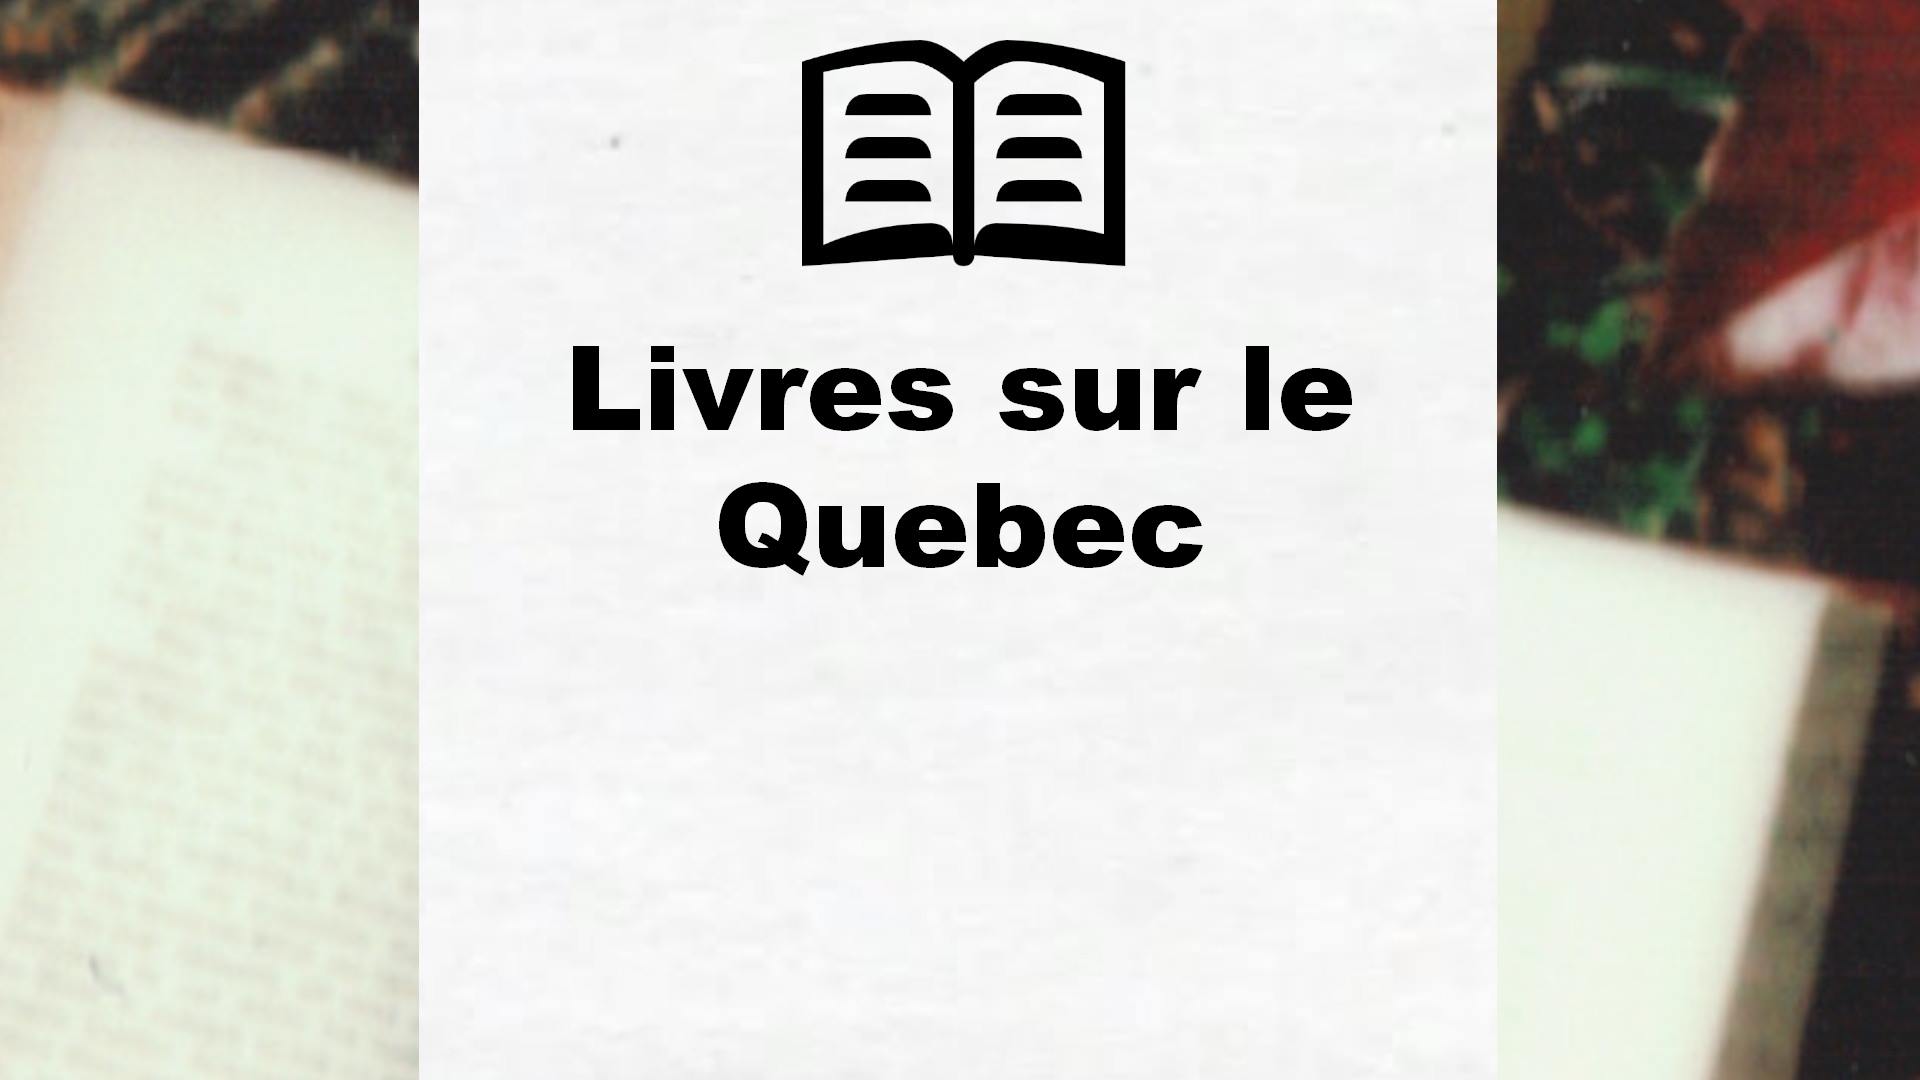 Livres sur le Quebec